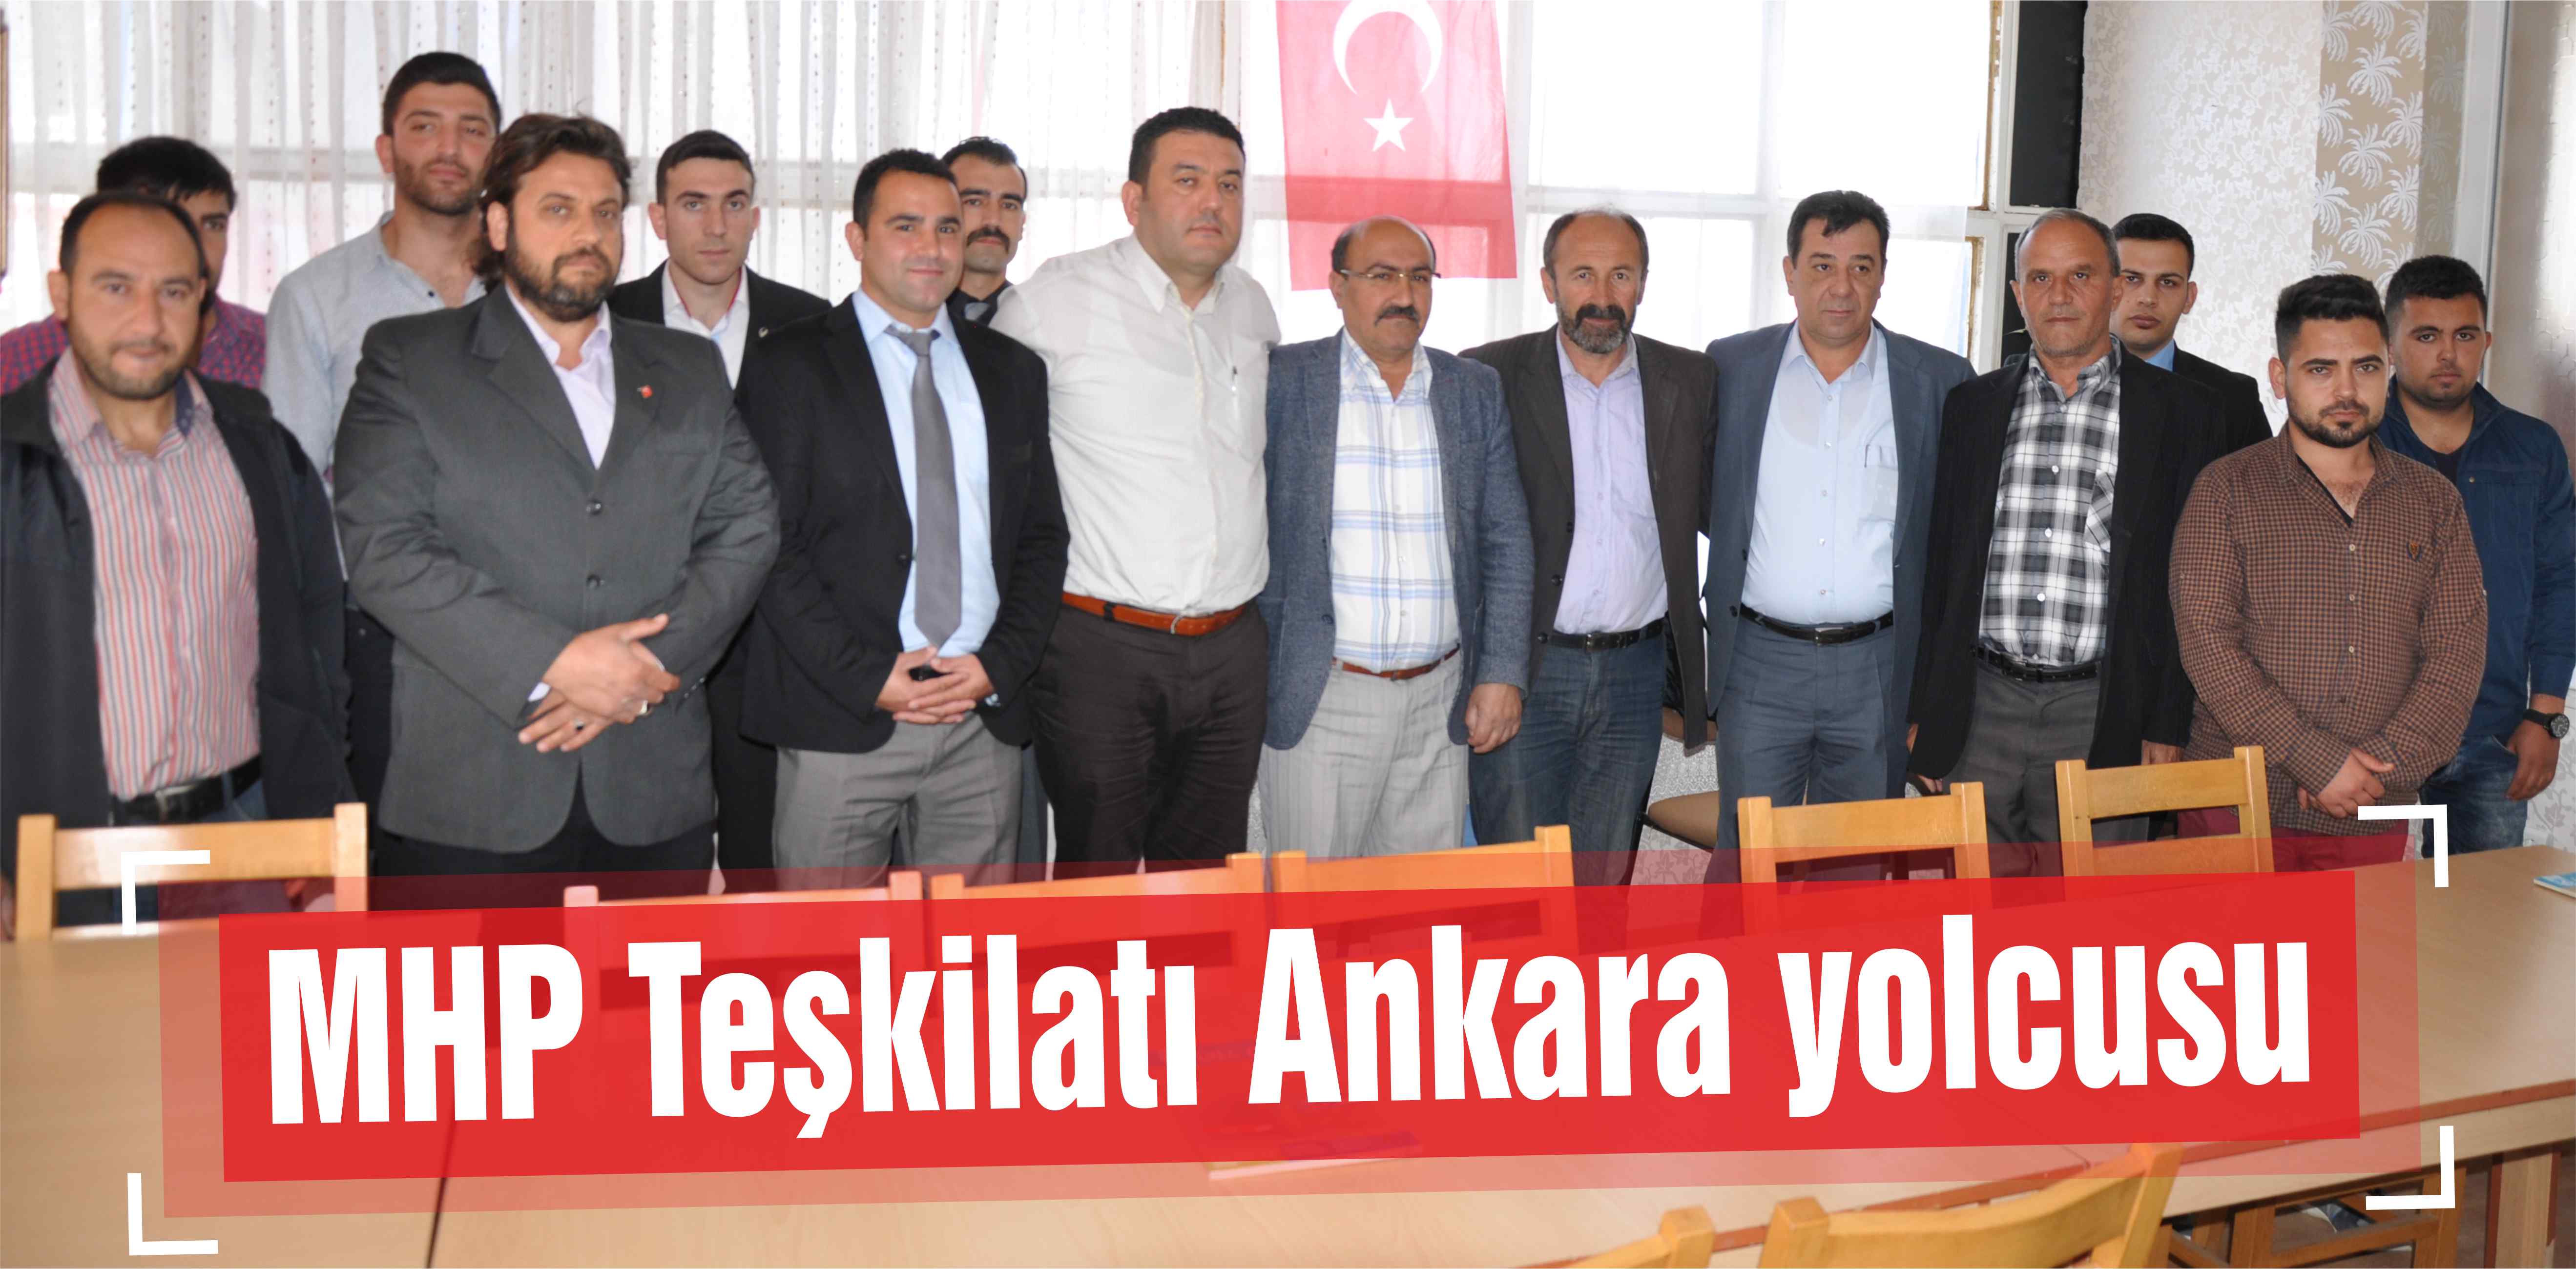 MHP Teşkilatı Ankara yolcusu